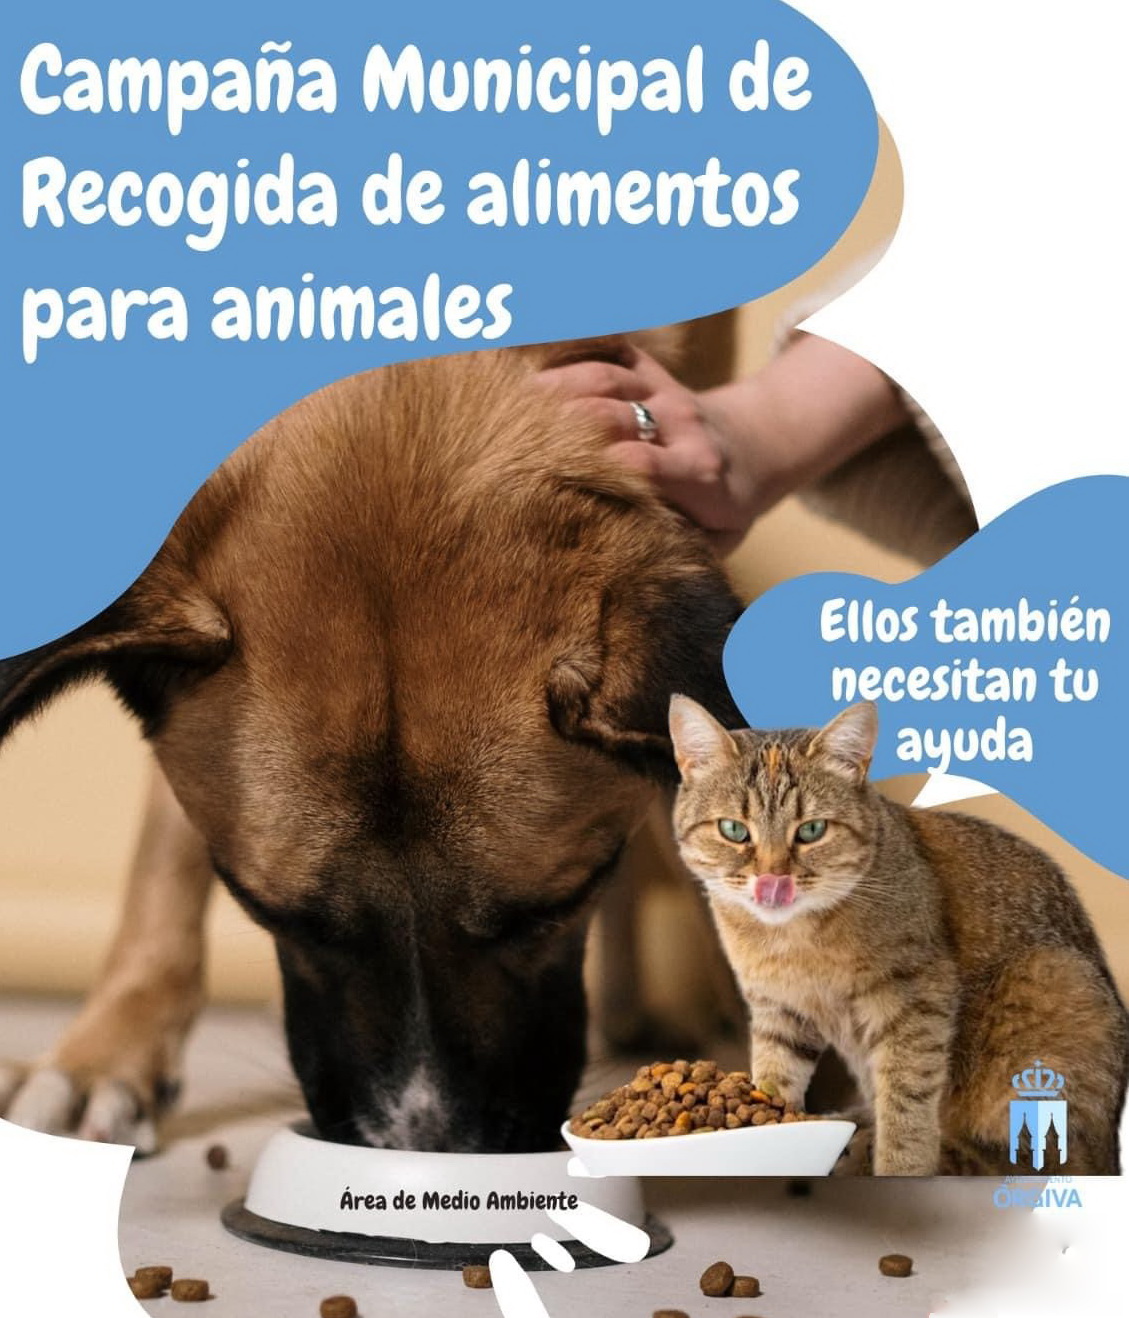 El Ayuntamiento de Órgiva organiza una campaña de recogida de alimentos para animales